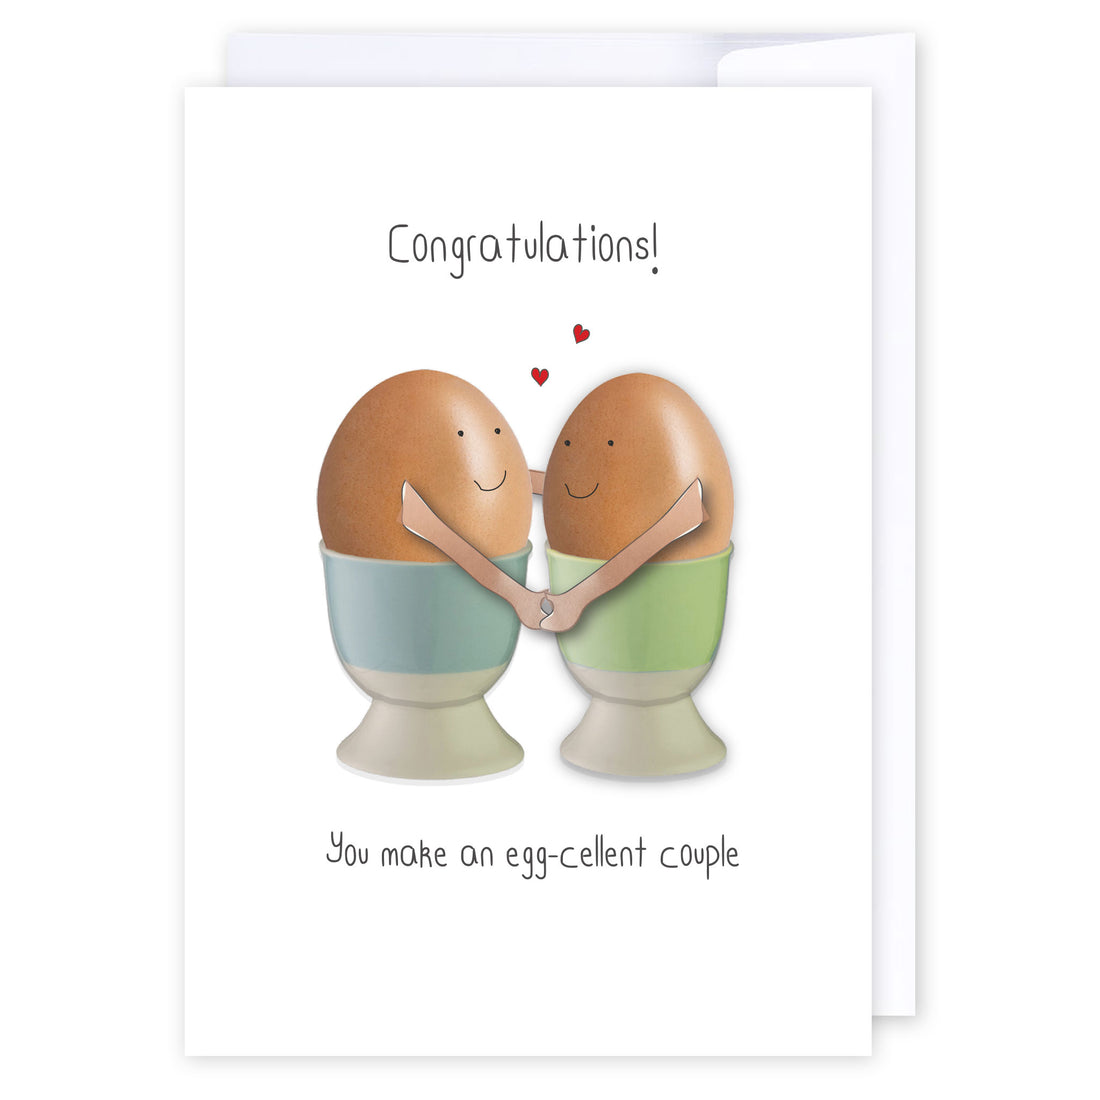 Egg-cellent couple